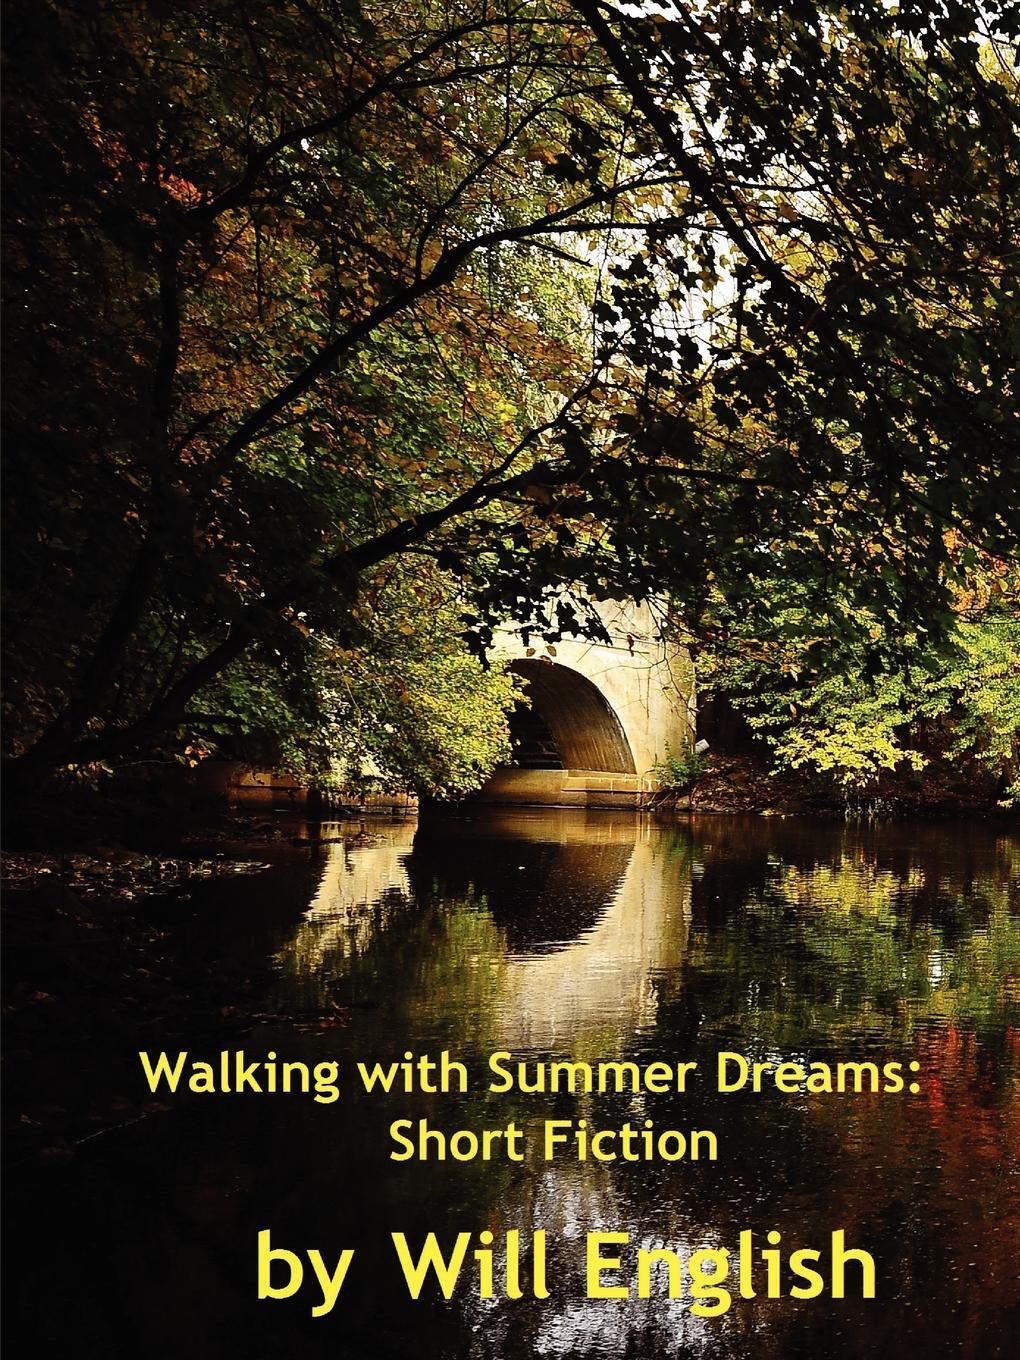 Summer Dream. Short fiction